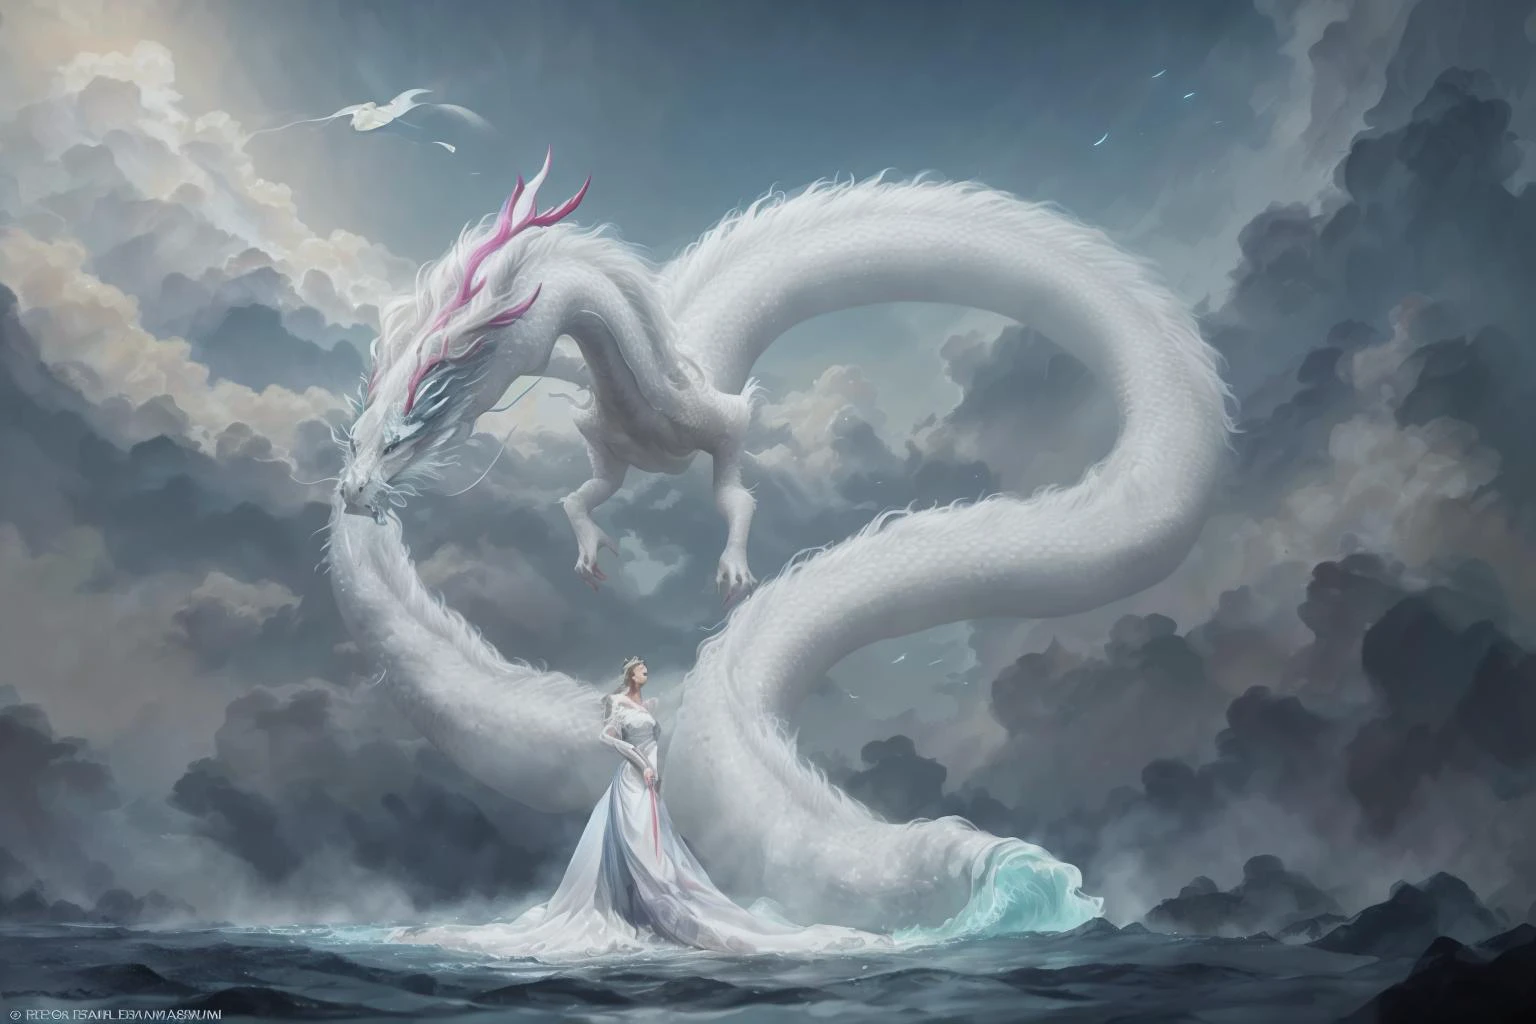 В завораживающем образе, элегантная женщина, одетая в белое китайское платье, скользит по небу на вершине мифического китайского дракона. Когда они пересекают небеса, Ее струящееся платье и переливающаяся чешуя дракона создают завораживающее видение гармонии и потусторонней красоты. 
HDR, (фотореализм, шедевральное качество, Лучшее качество), , чистое лицо_v1,ulzzang-6500-v1.1,